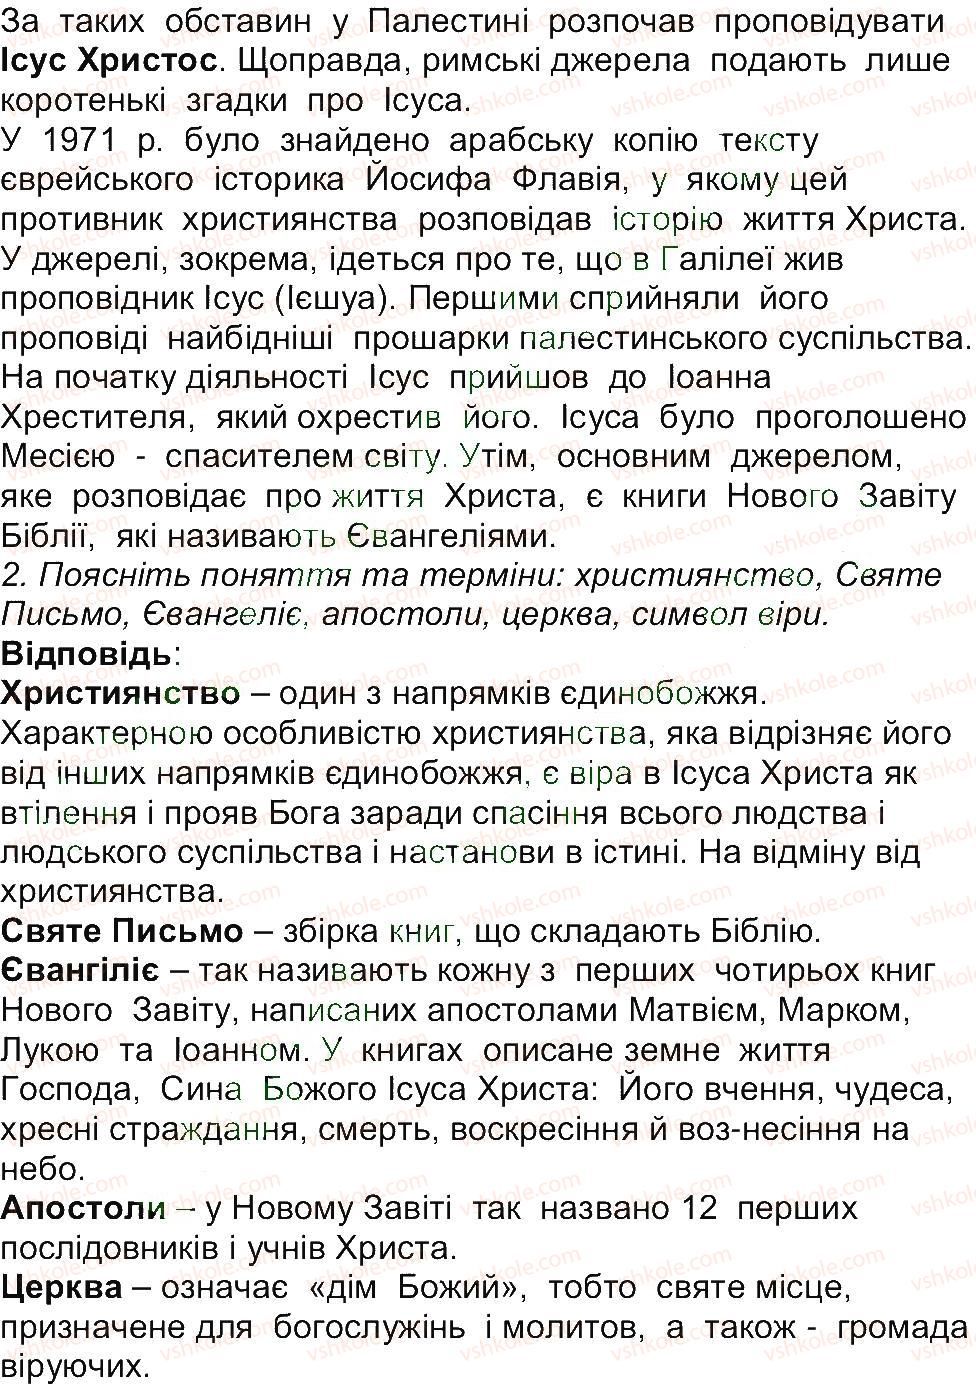 6-istoriya-og-bandrovskij-vs-vlasov-2014--storinki-201-270-257-rnd4336.jpg